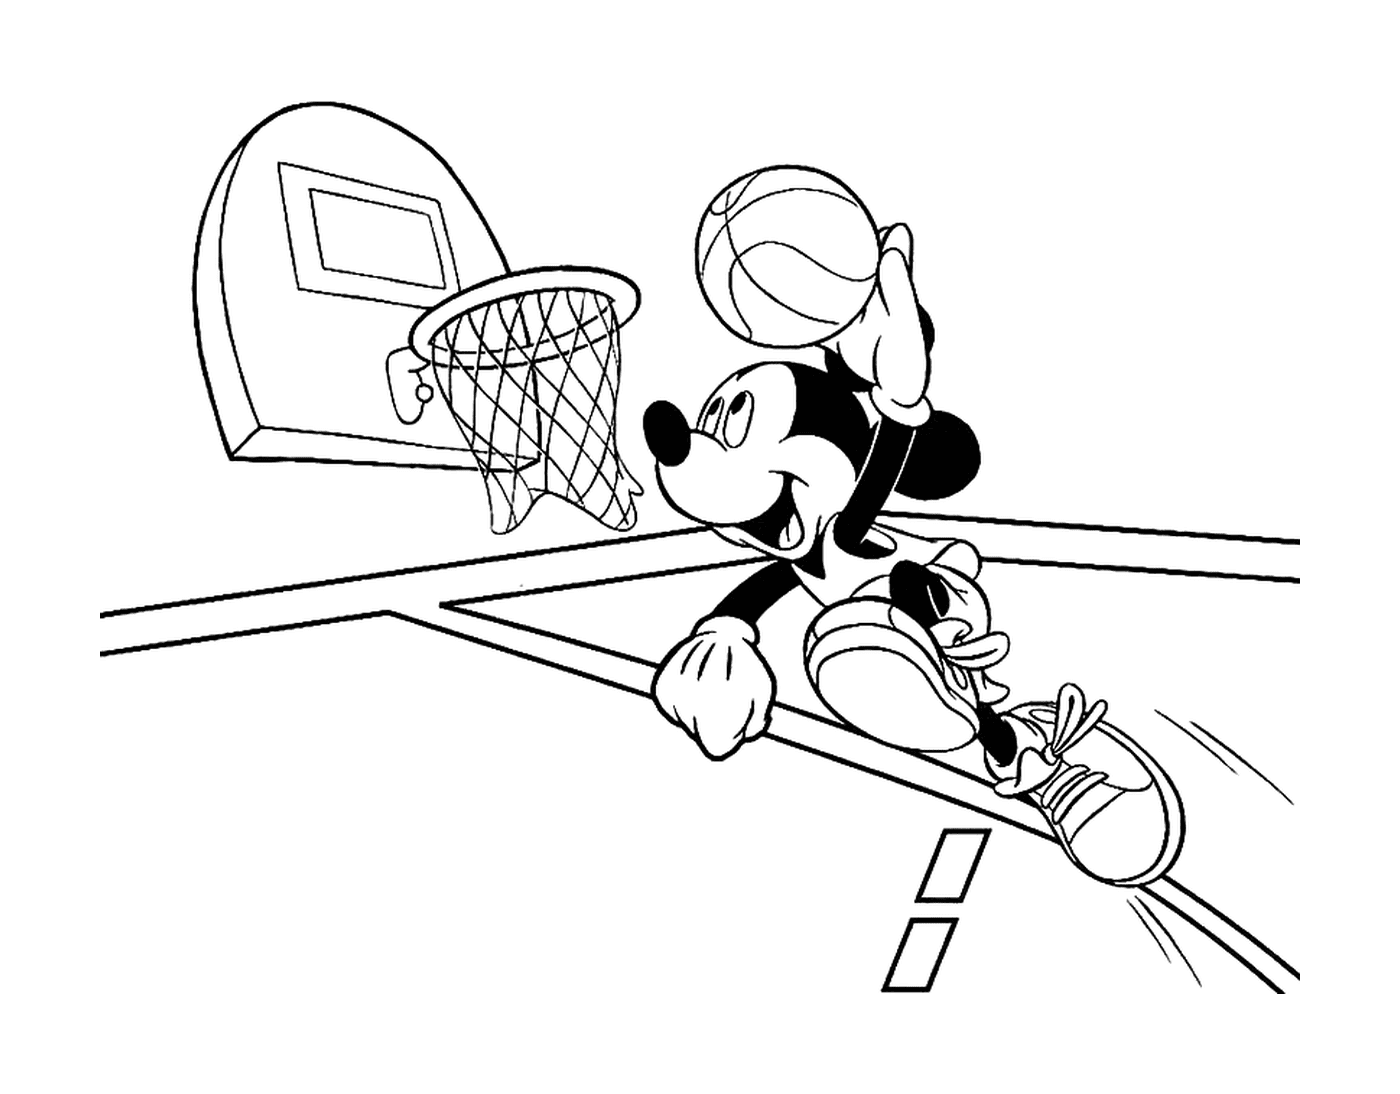  ميكي يلعب كرة السلة 